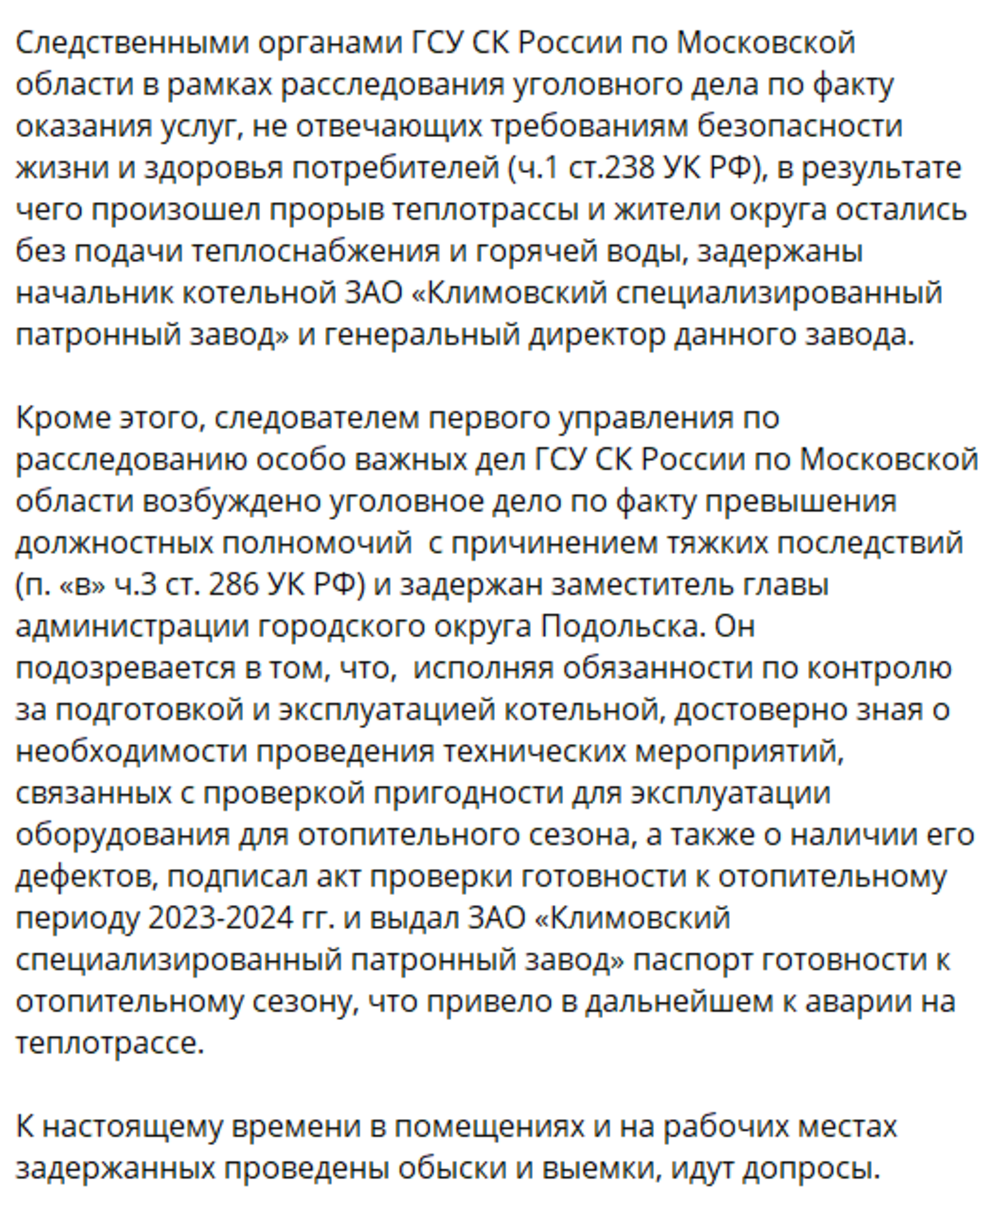 «Я, честно говоря, никуда не собираюсь»: губернатор Подмосковья встретился с жителями Подольска и объяснил причины коммунального коллапса